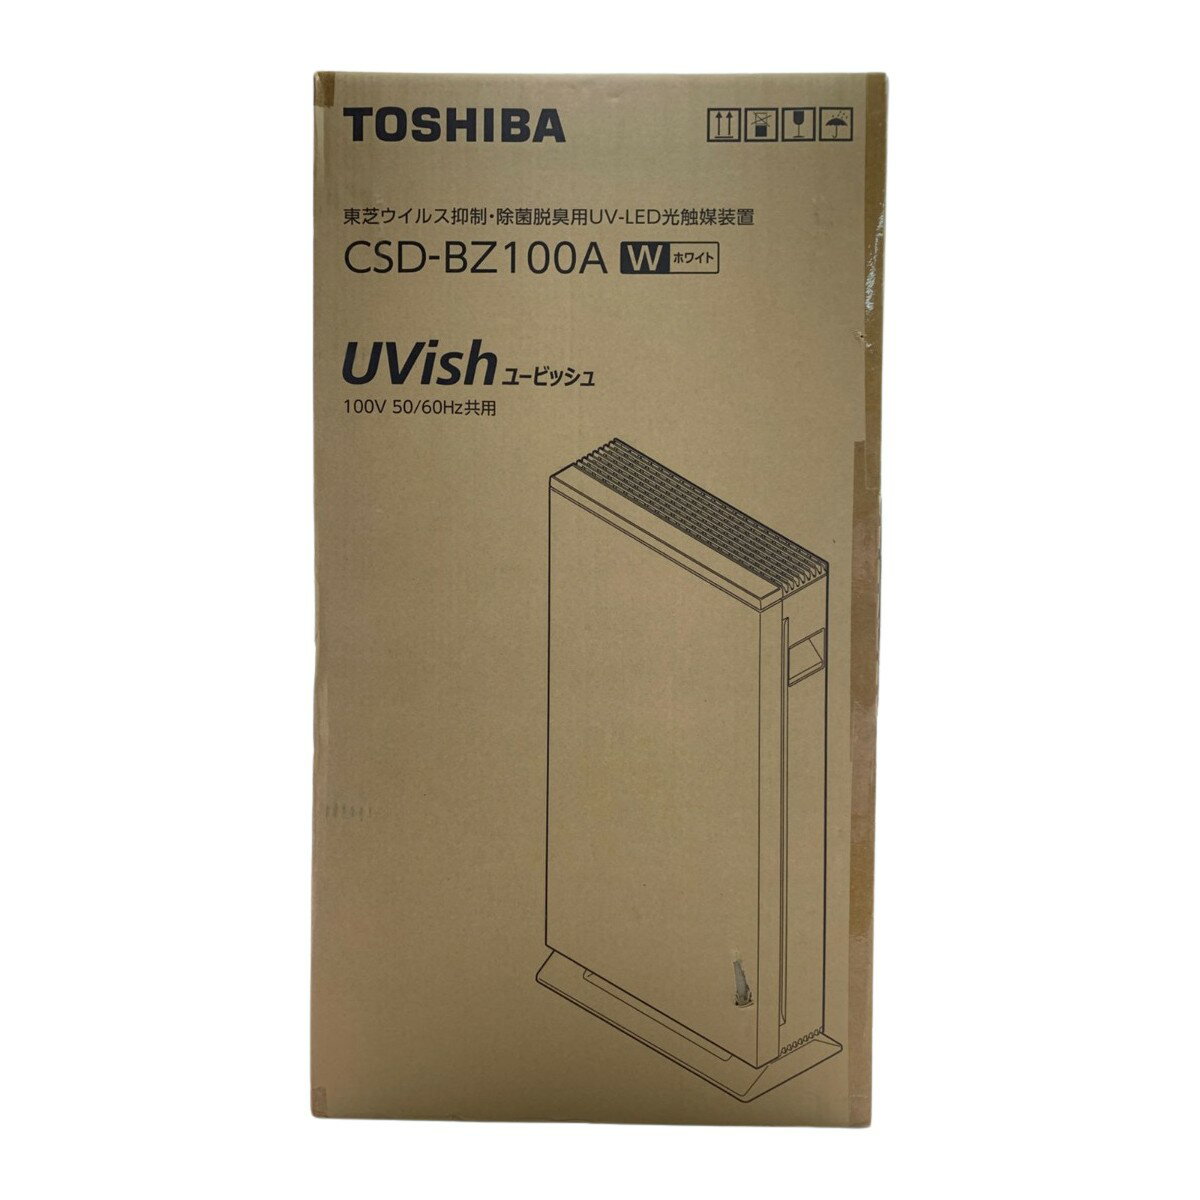 ▽▽【中古】TOSHIBA 東芝 UVish ウイルス抑制・除菌脱臭用UV-LED光触媒装置 CSD-BZ100A Sランク